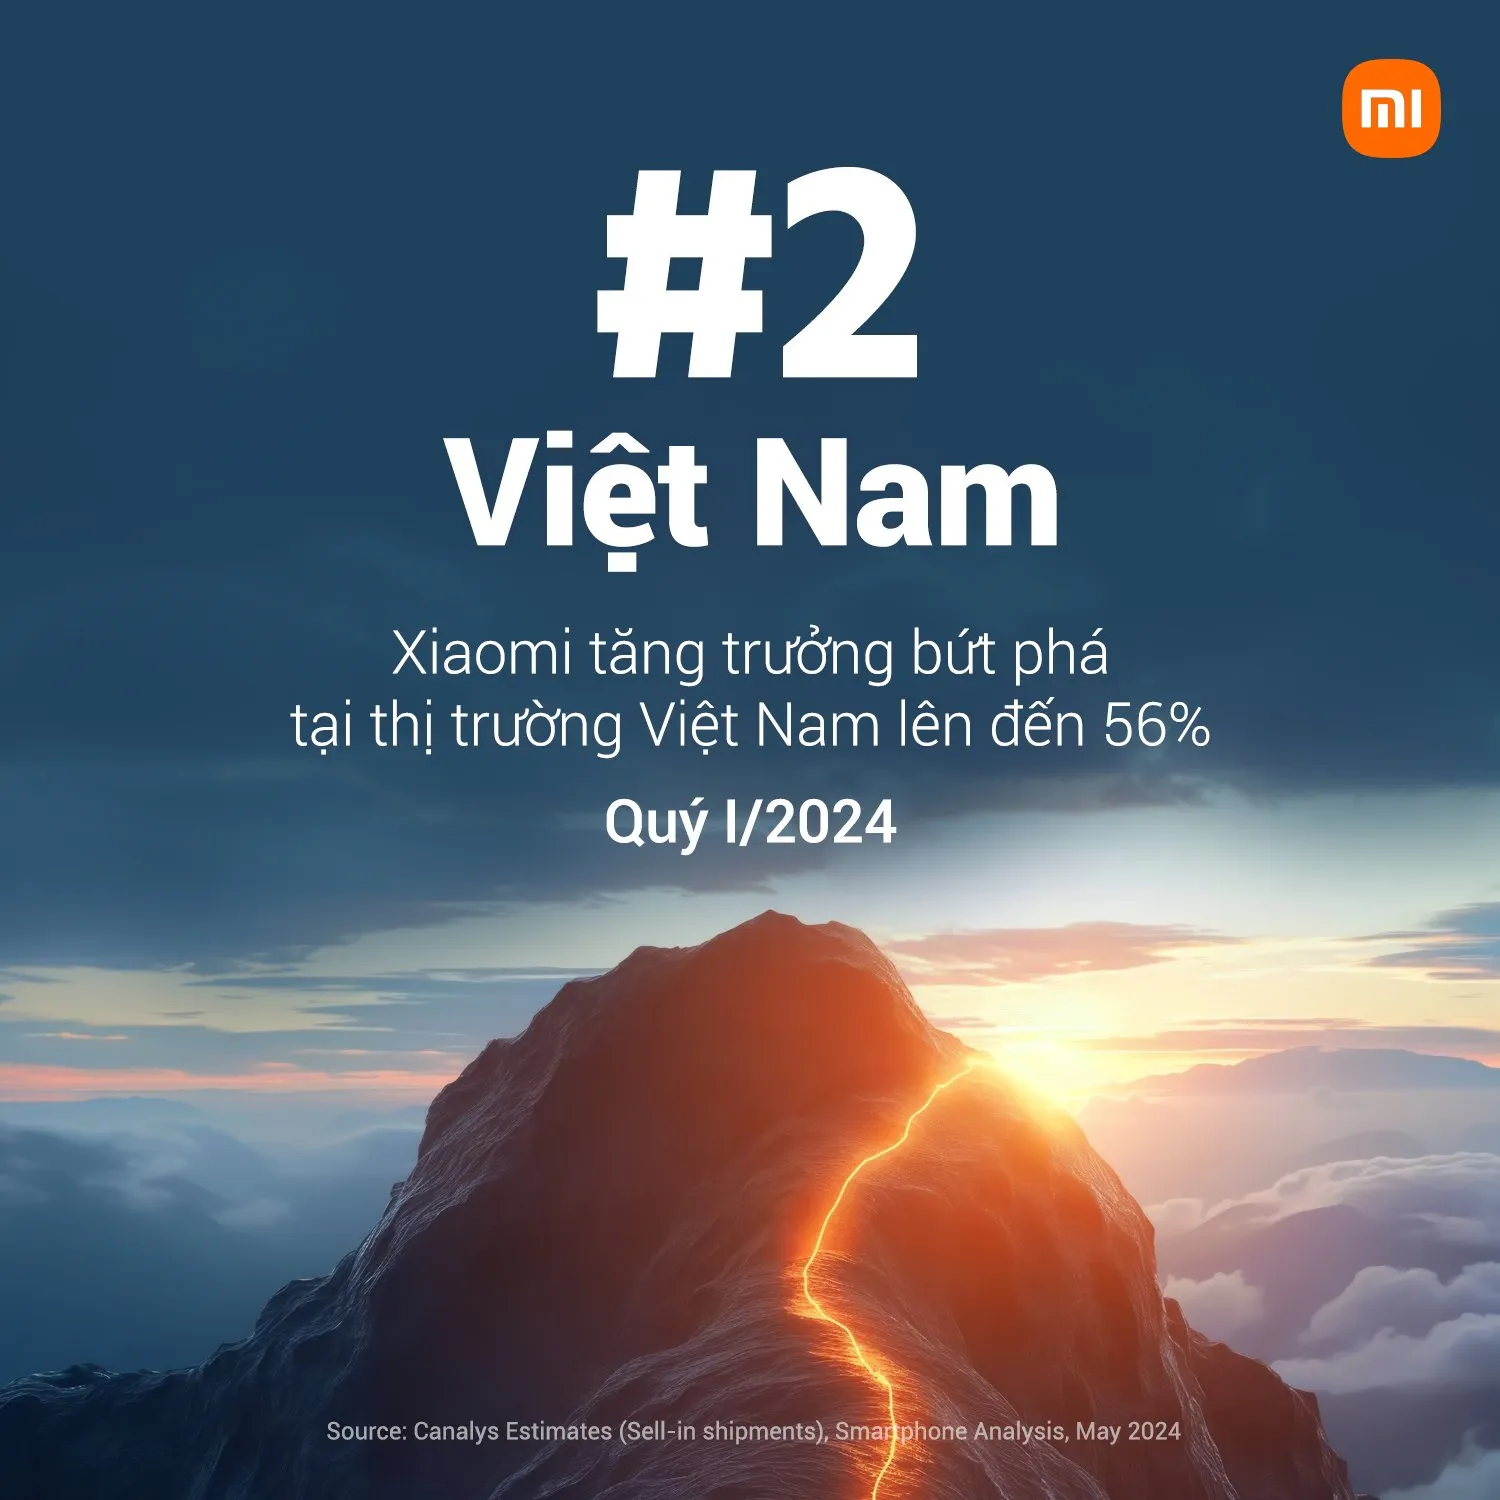 Xiaomi vươn lên vị trí thứ 2 thị trường smartphone Việt Nam với doanh số tăng trưởng 288%